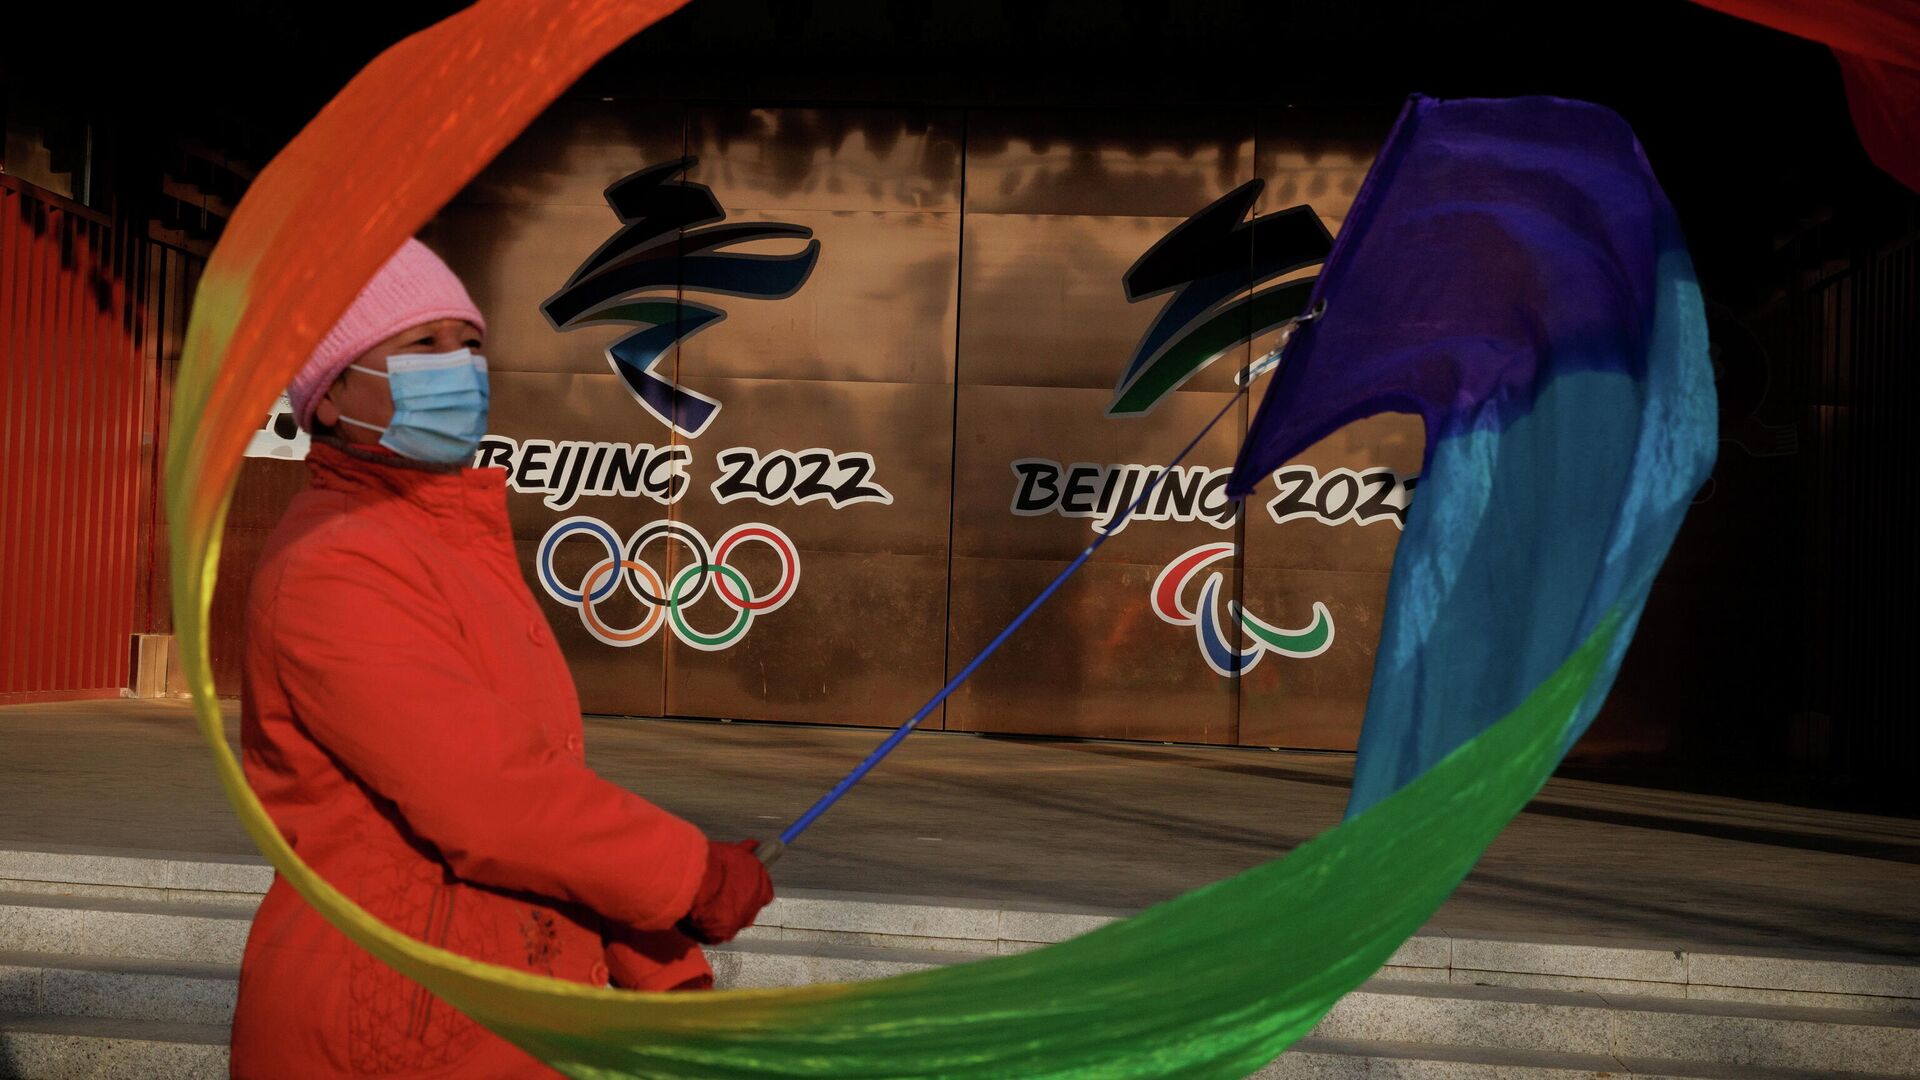 Una mujer con una cinta cerca de los logotipos de los Juegos Olímpicos y Paralímpicos de Pekín 2022 en un parque, China, el 8 de diciembre de 2021 - Sputnik Mundo, 1920, 09.12.2021